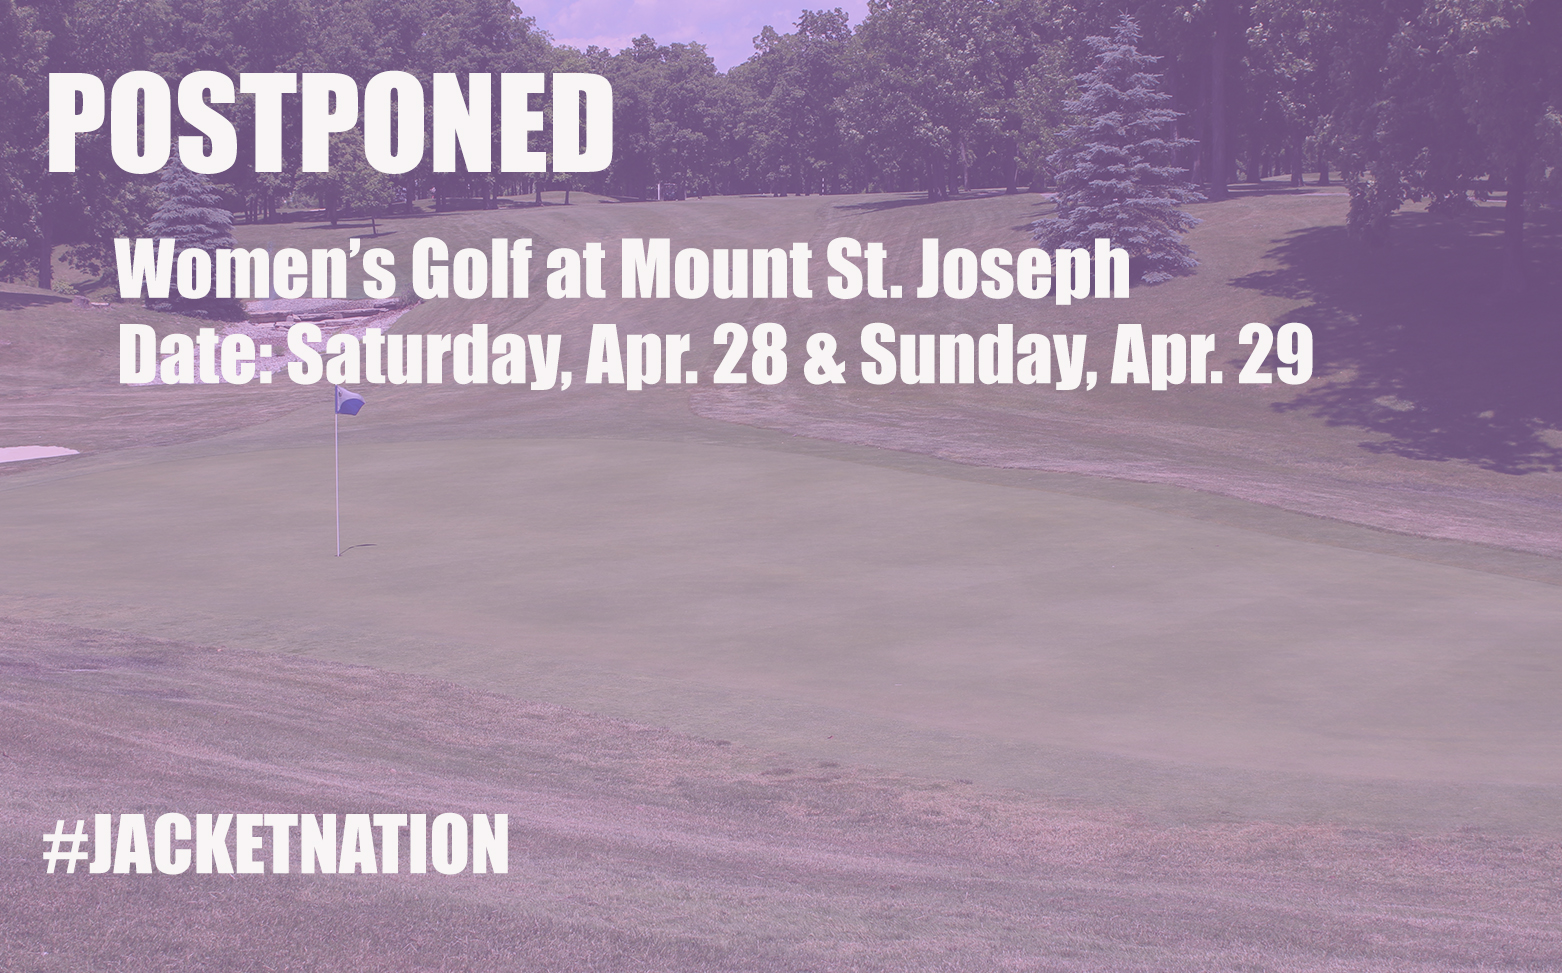 Women's Golf at Mount St. Joseph Postponed